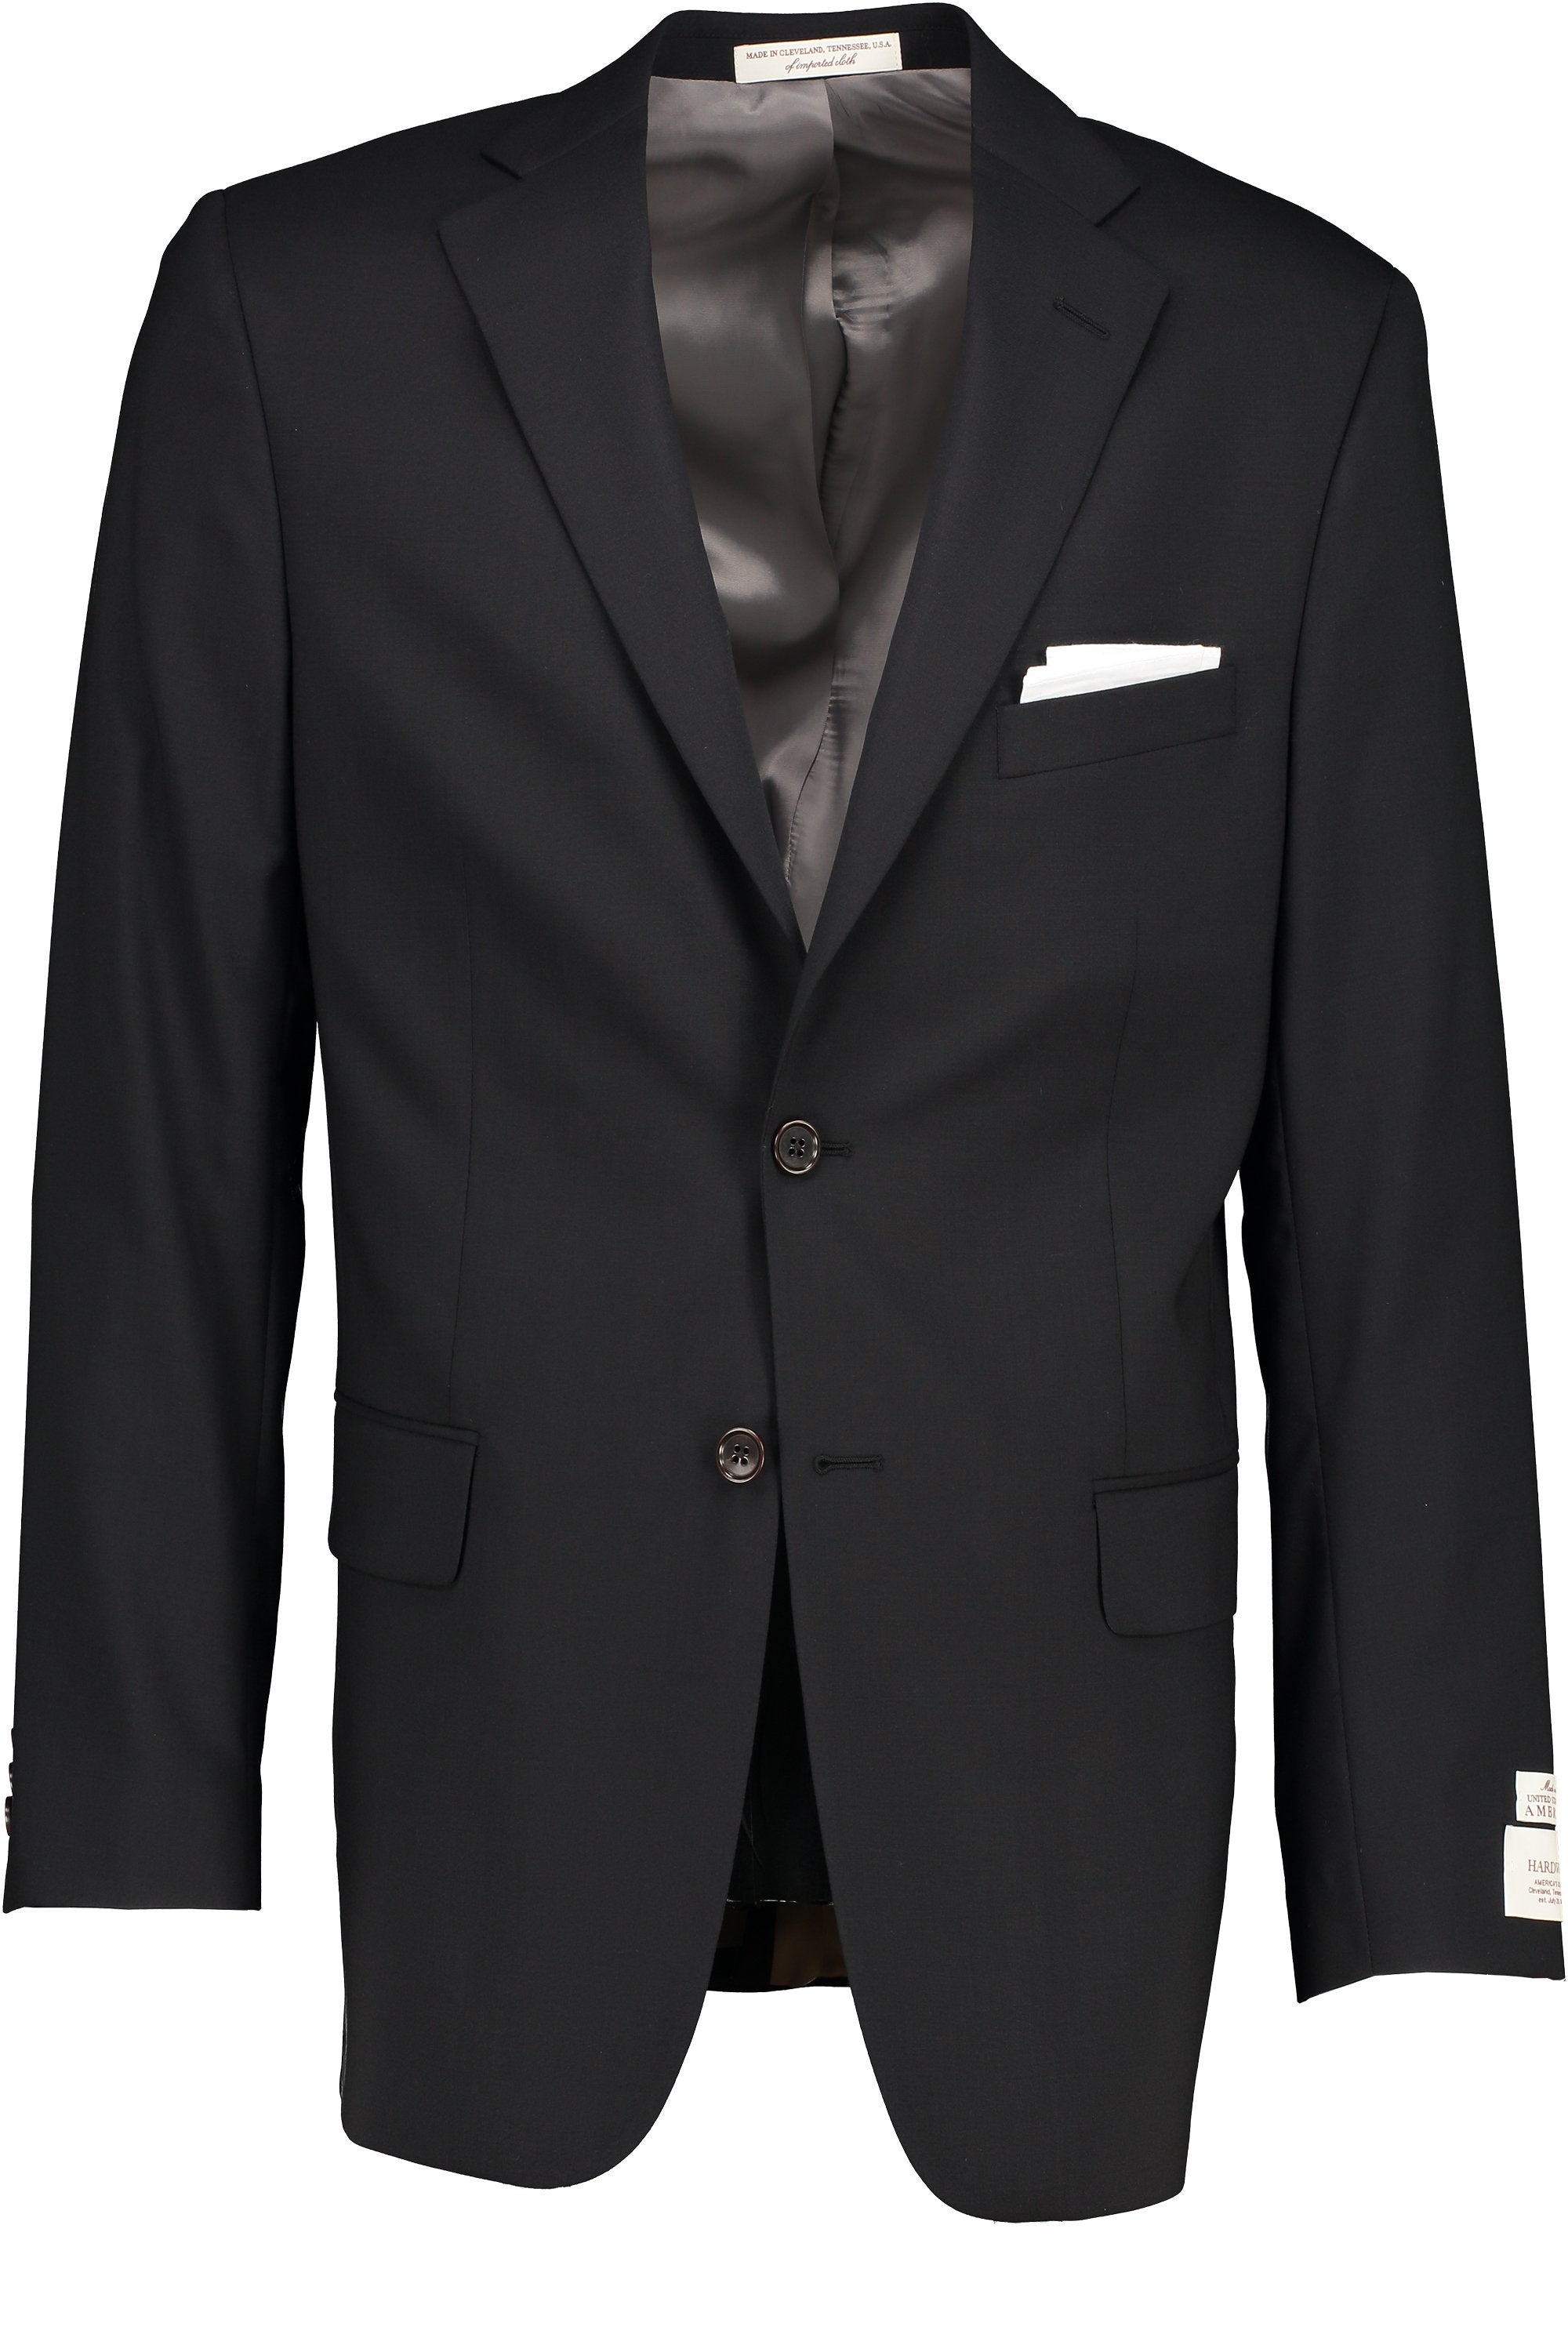 Men's Suit Separate - Coat Portly Cut BLACK 98/2 WOOL/LYCRA SUPER100